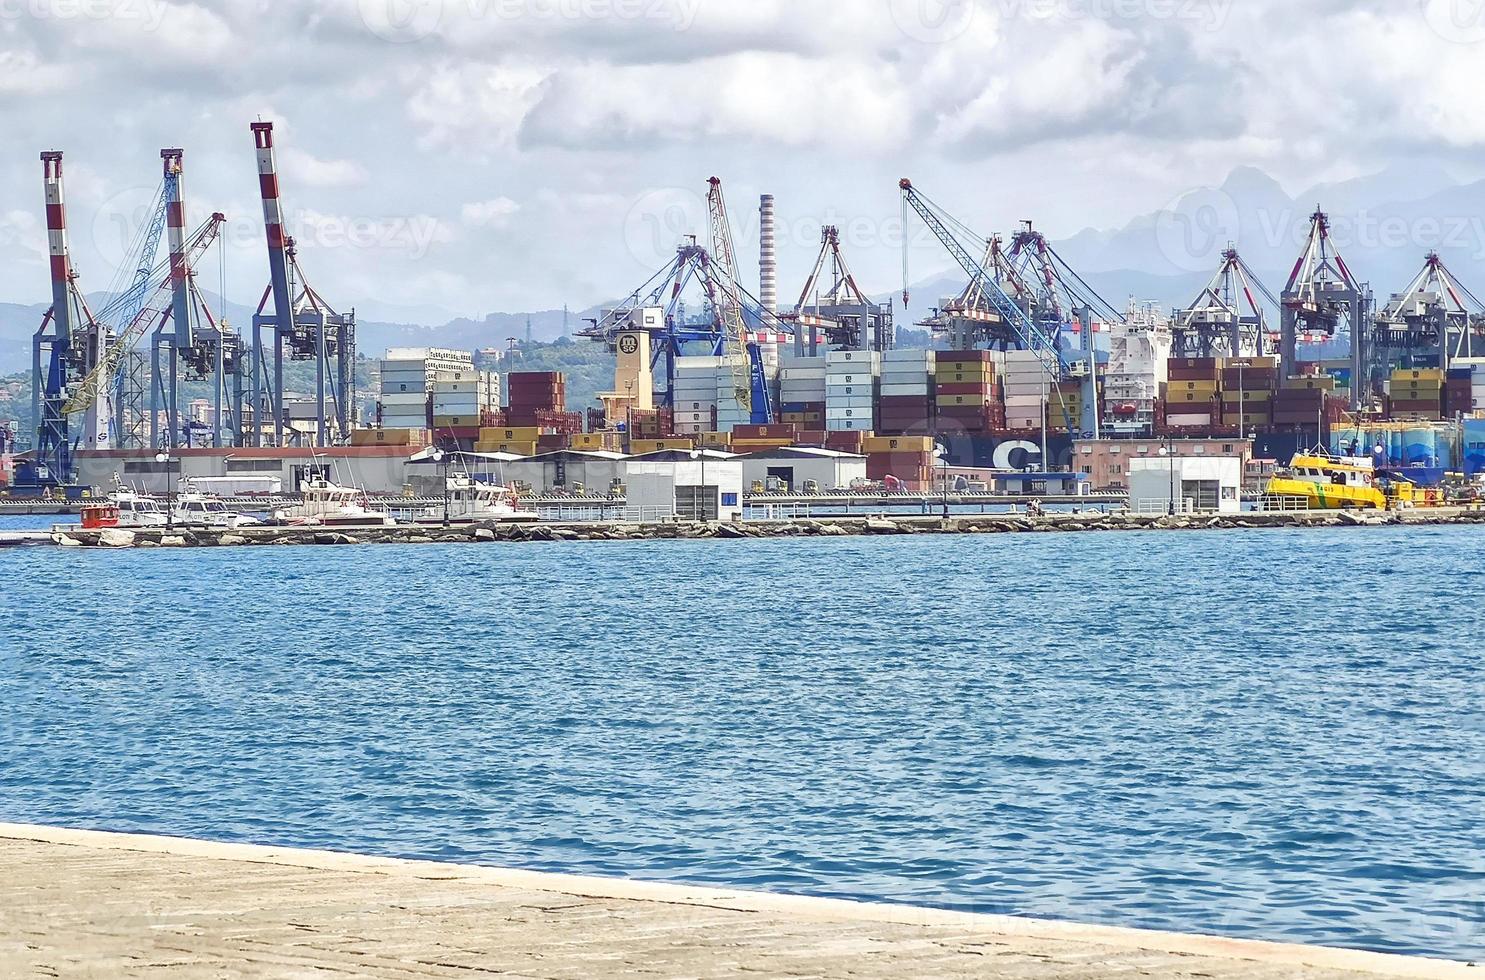 contenedores y grúas para maquinaria de carga se pueden ver en el paisaje industrial de la ciudad portuaria italiana de la spezia. foto